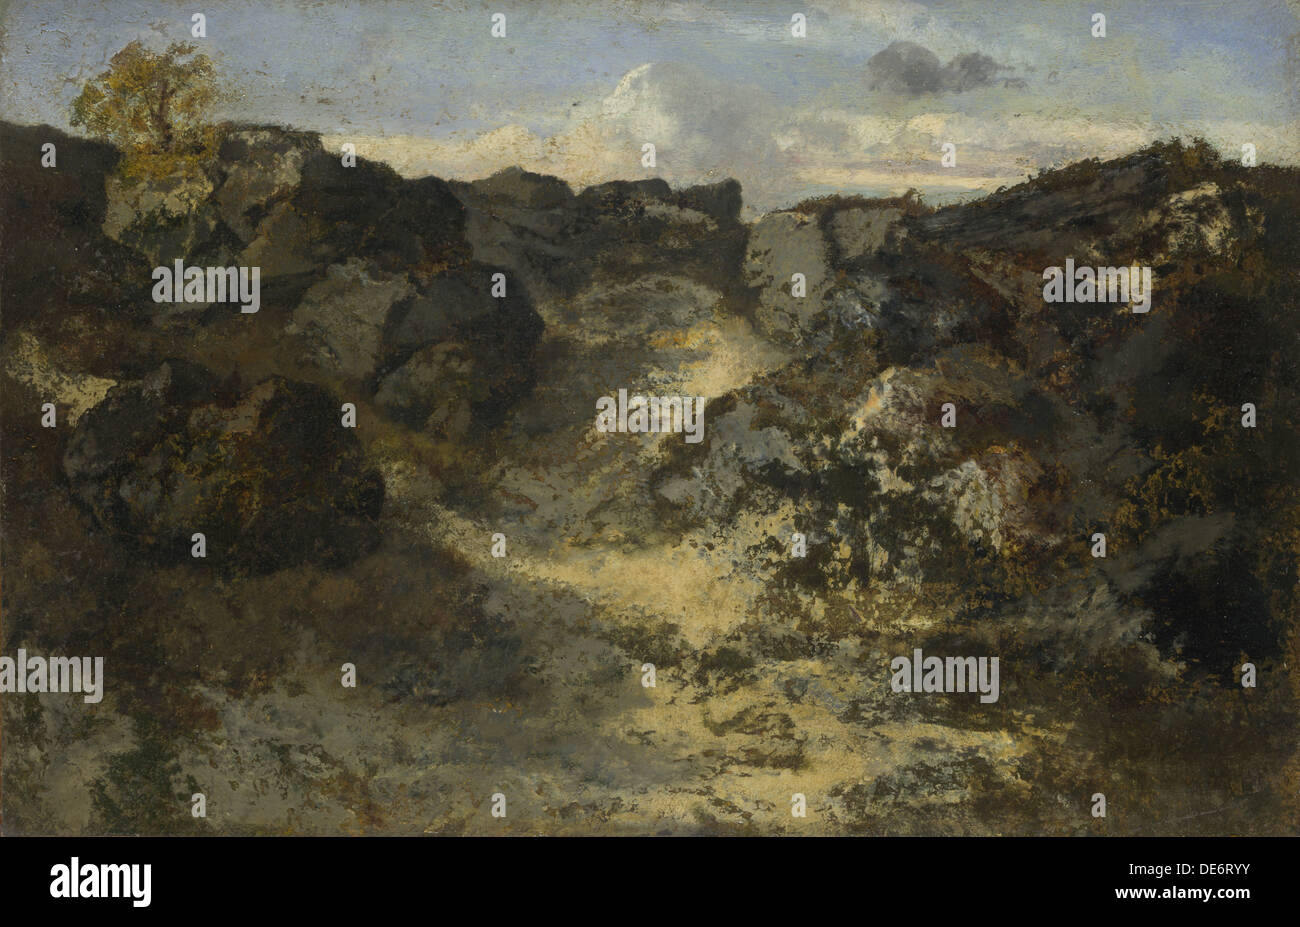 Rocky Landscape, c. 1840. Artist: Rousseau, Théodore (1812-1867) Stock Photo